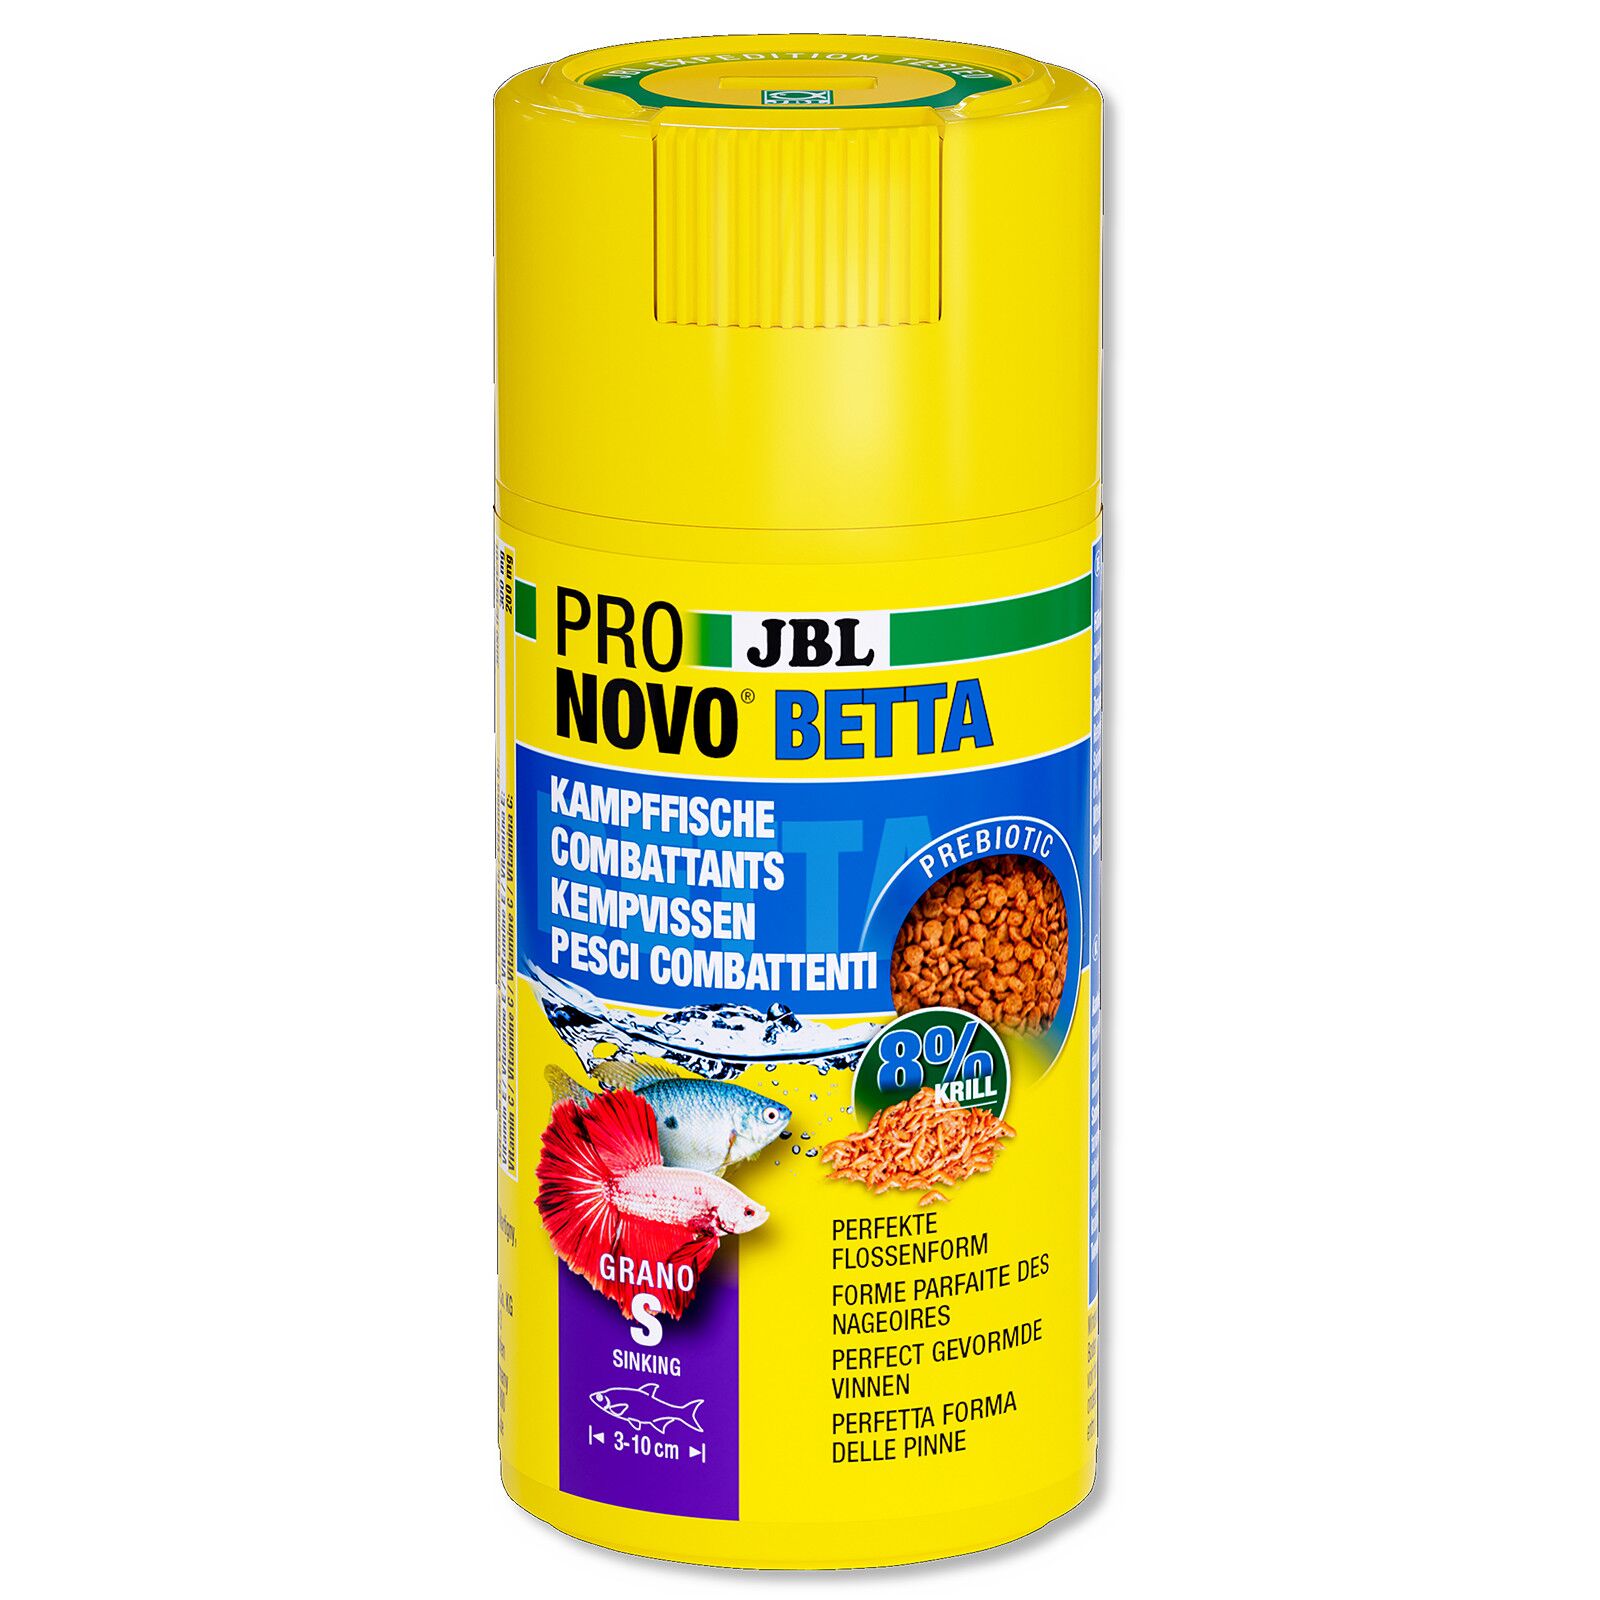 JBL - ProNovo - Betta Grano S